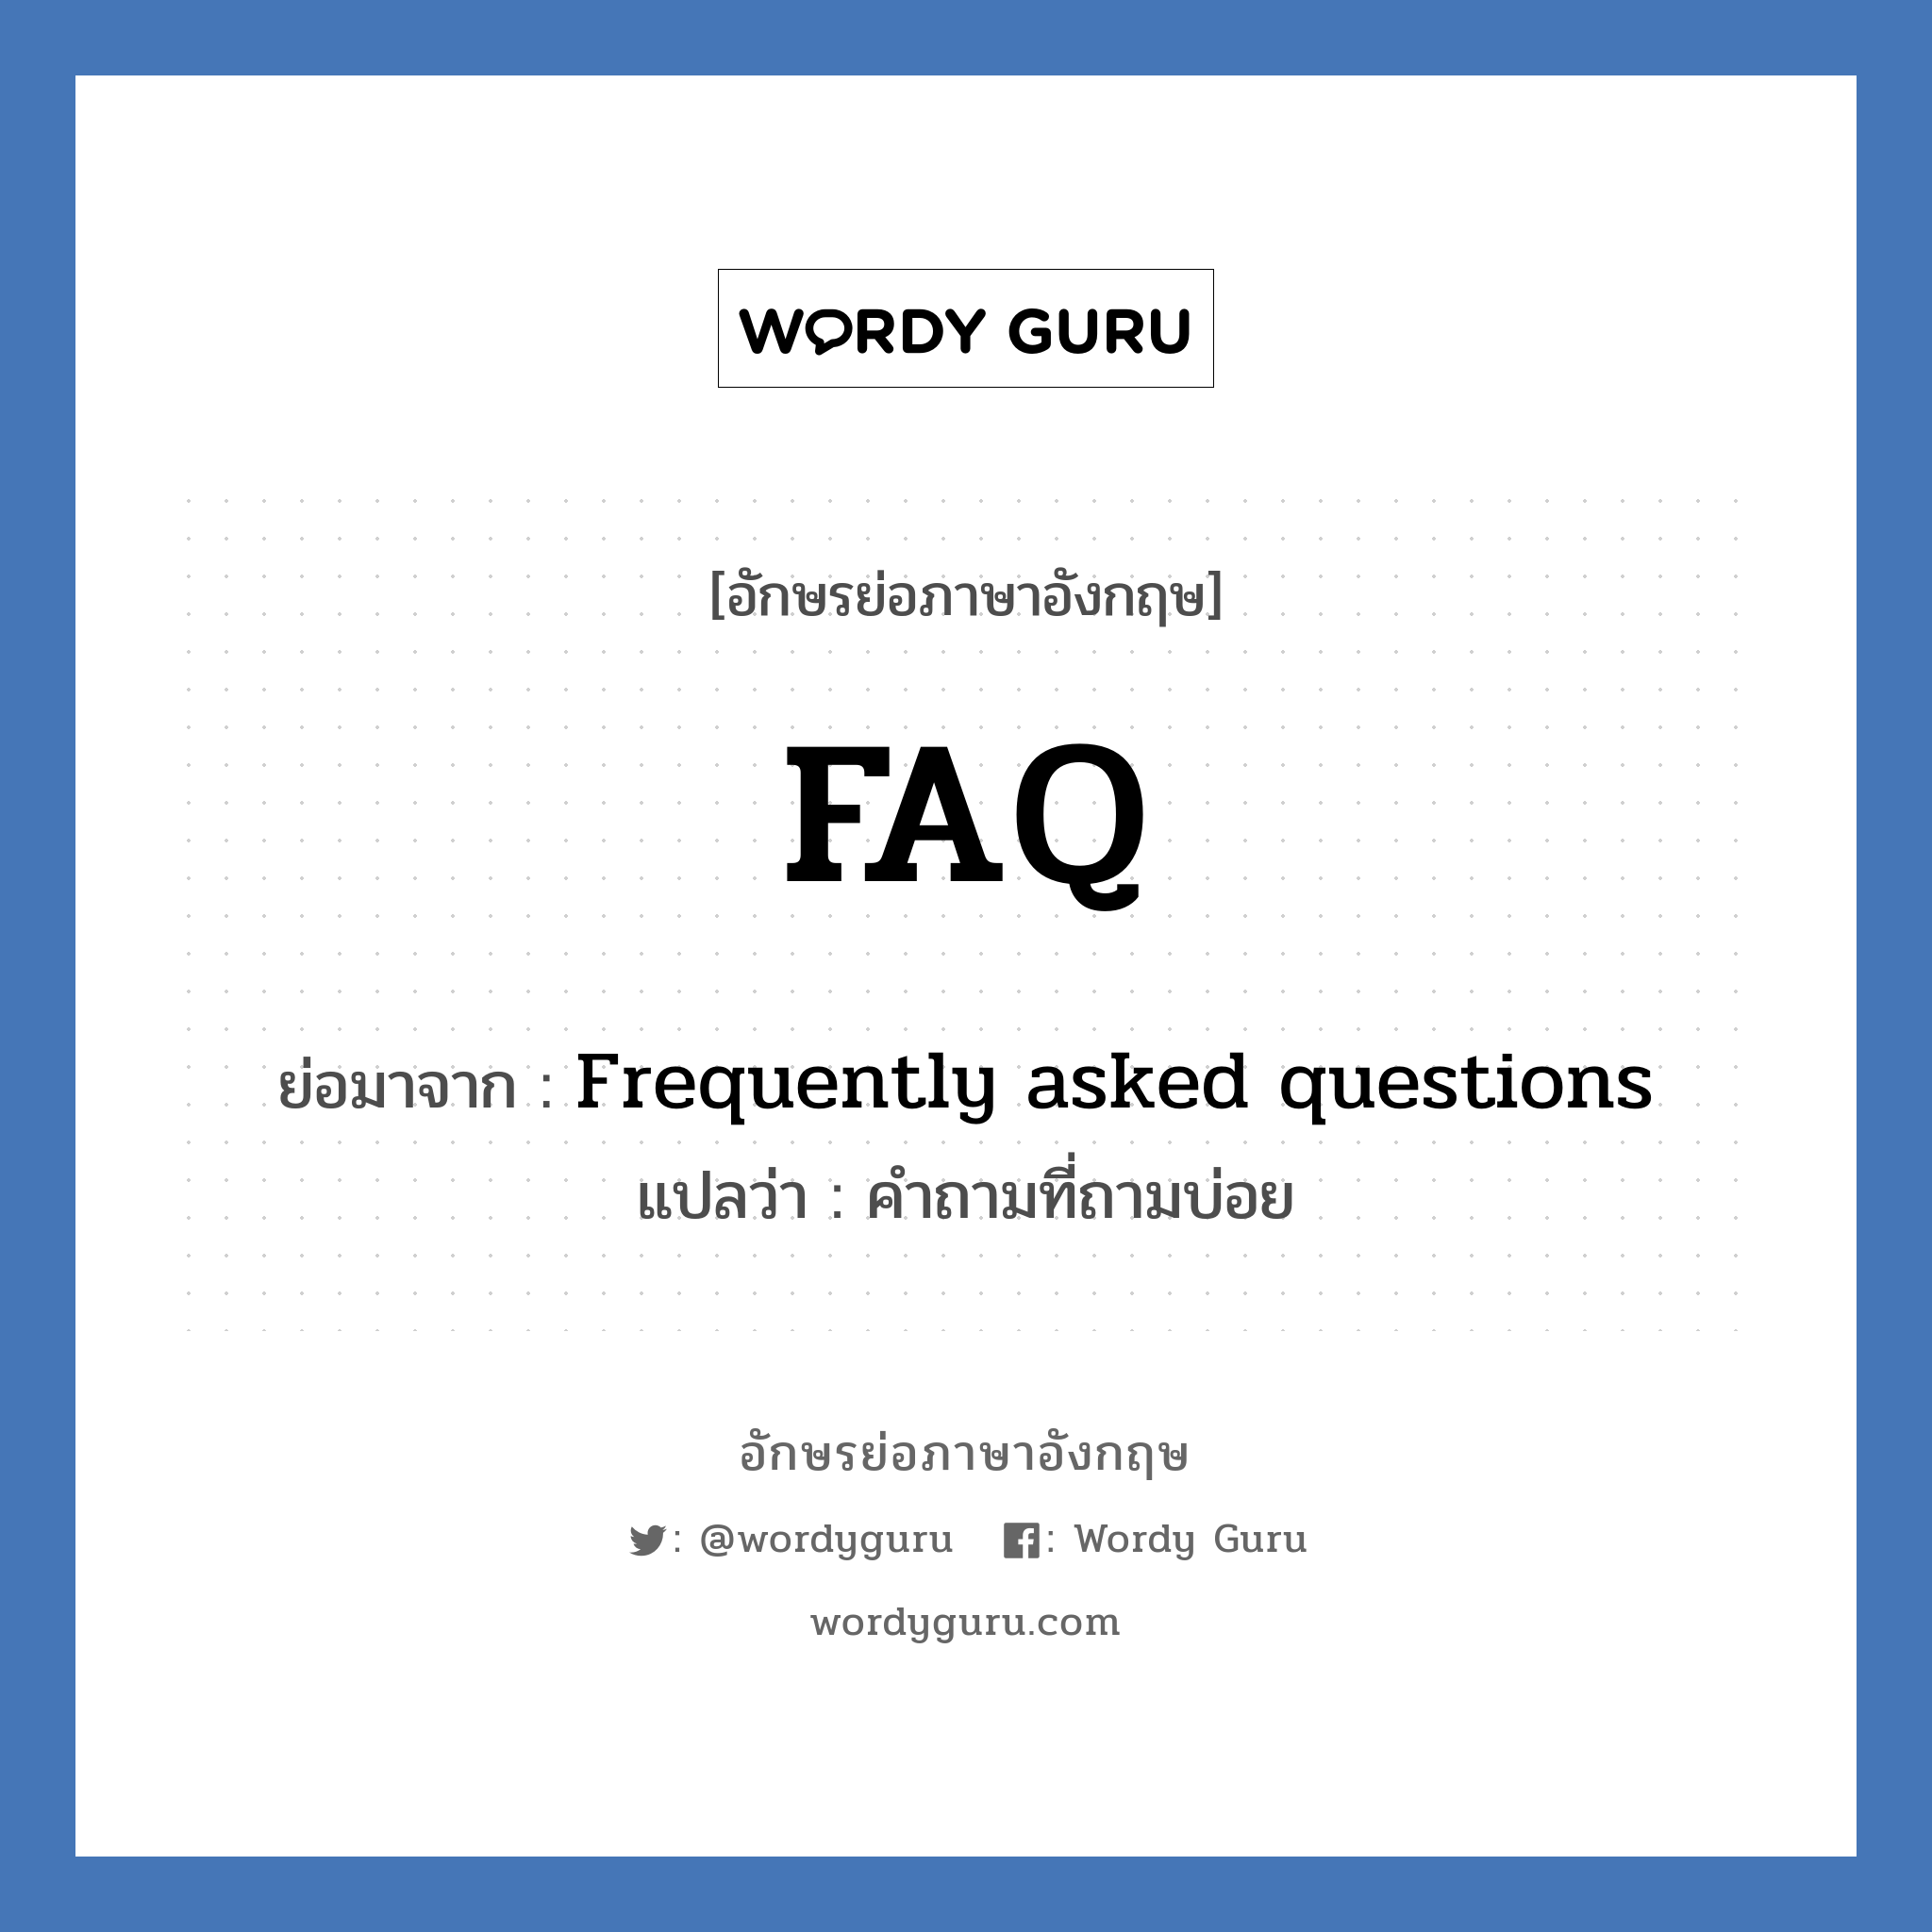 FAQ ย่อมาจาก? แปลว่า?, อักษรย่อภาษาอังกฤษ FAQ ย่อมาจาก Frequently asked questions แปลว่า คำถามที่ถามบ่อย